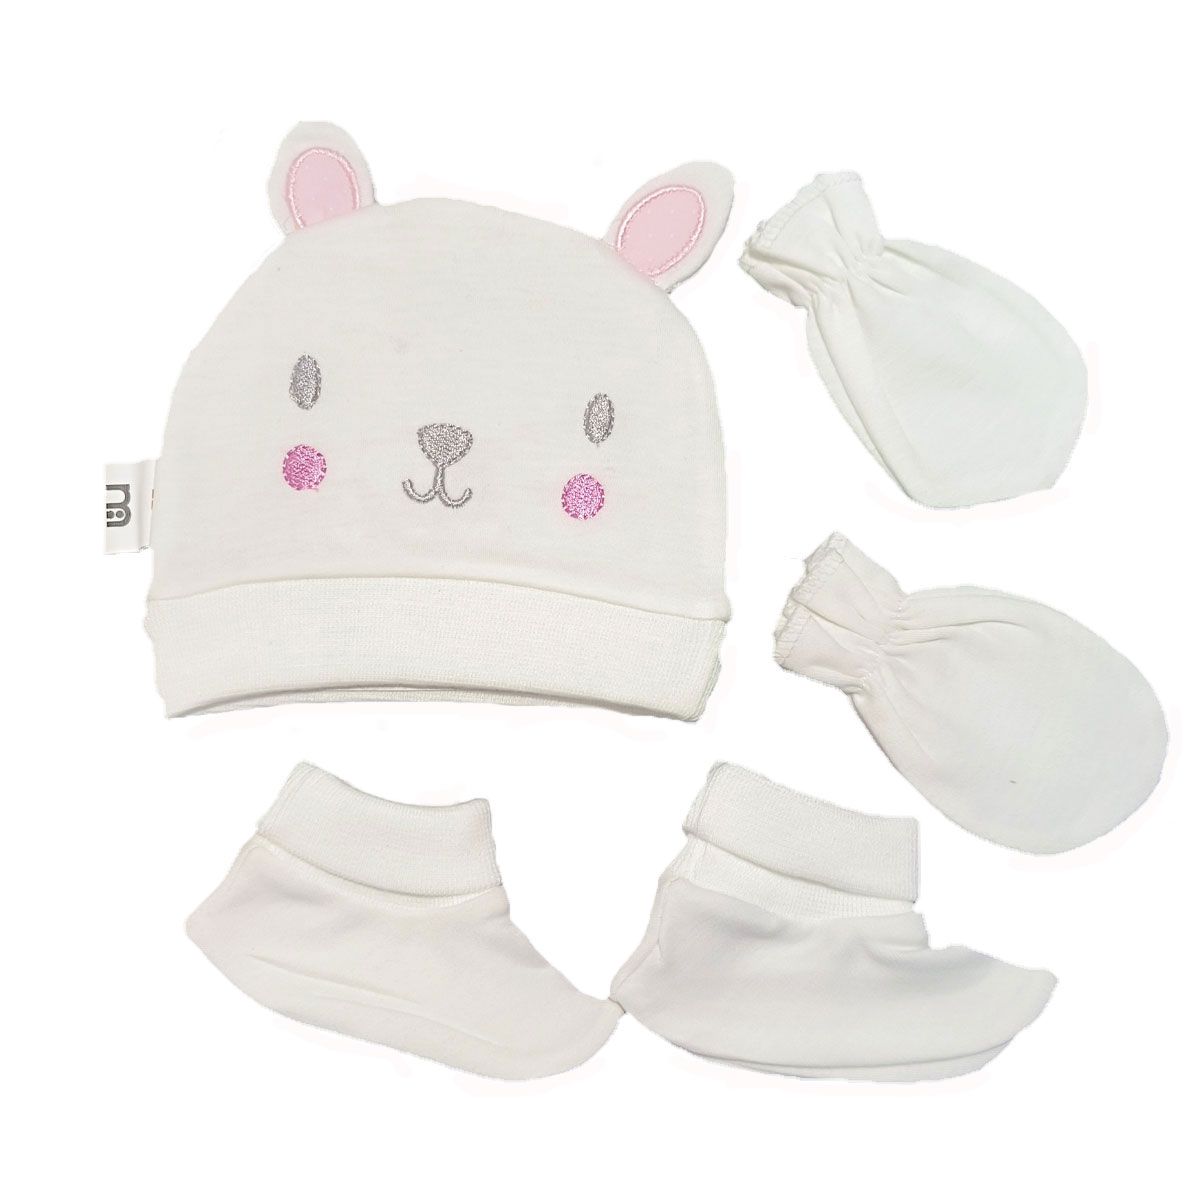 ست کلاه و دستکش و پاپوش نوزادی مادرکر مدل baby cat -  - 1